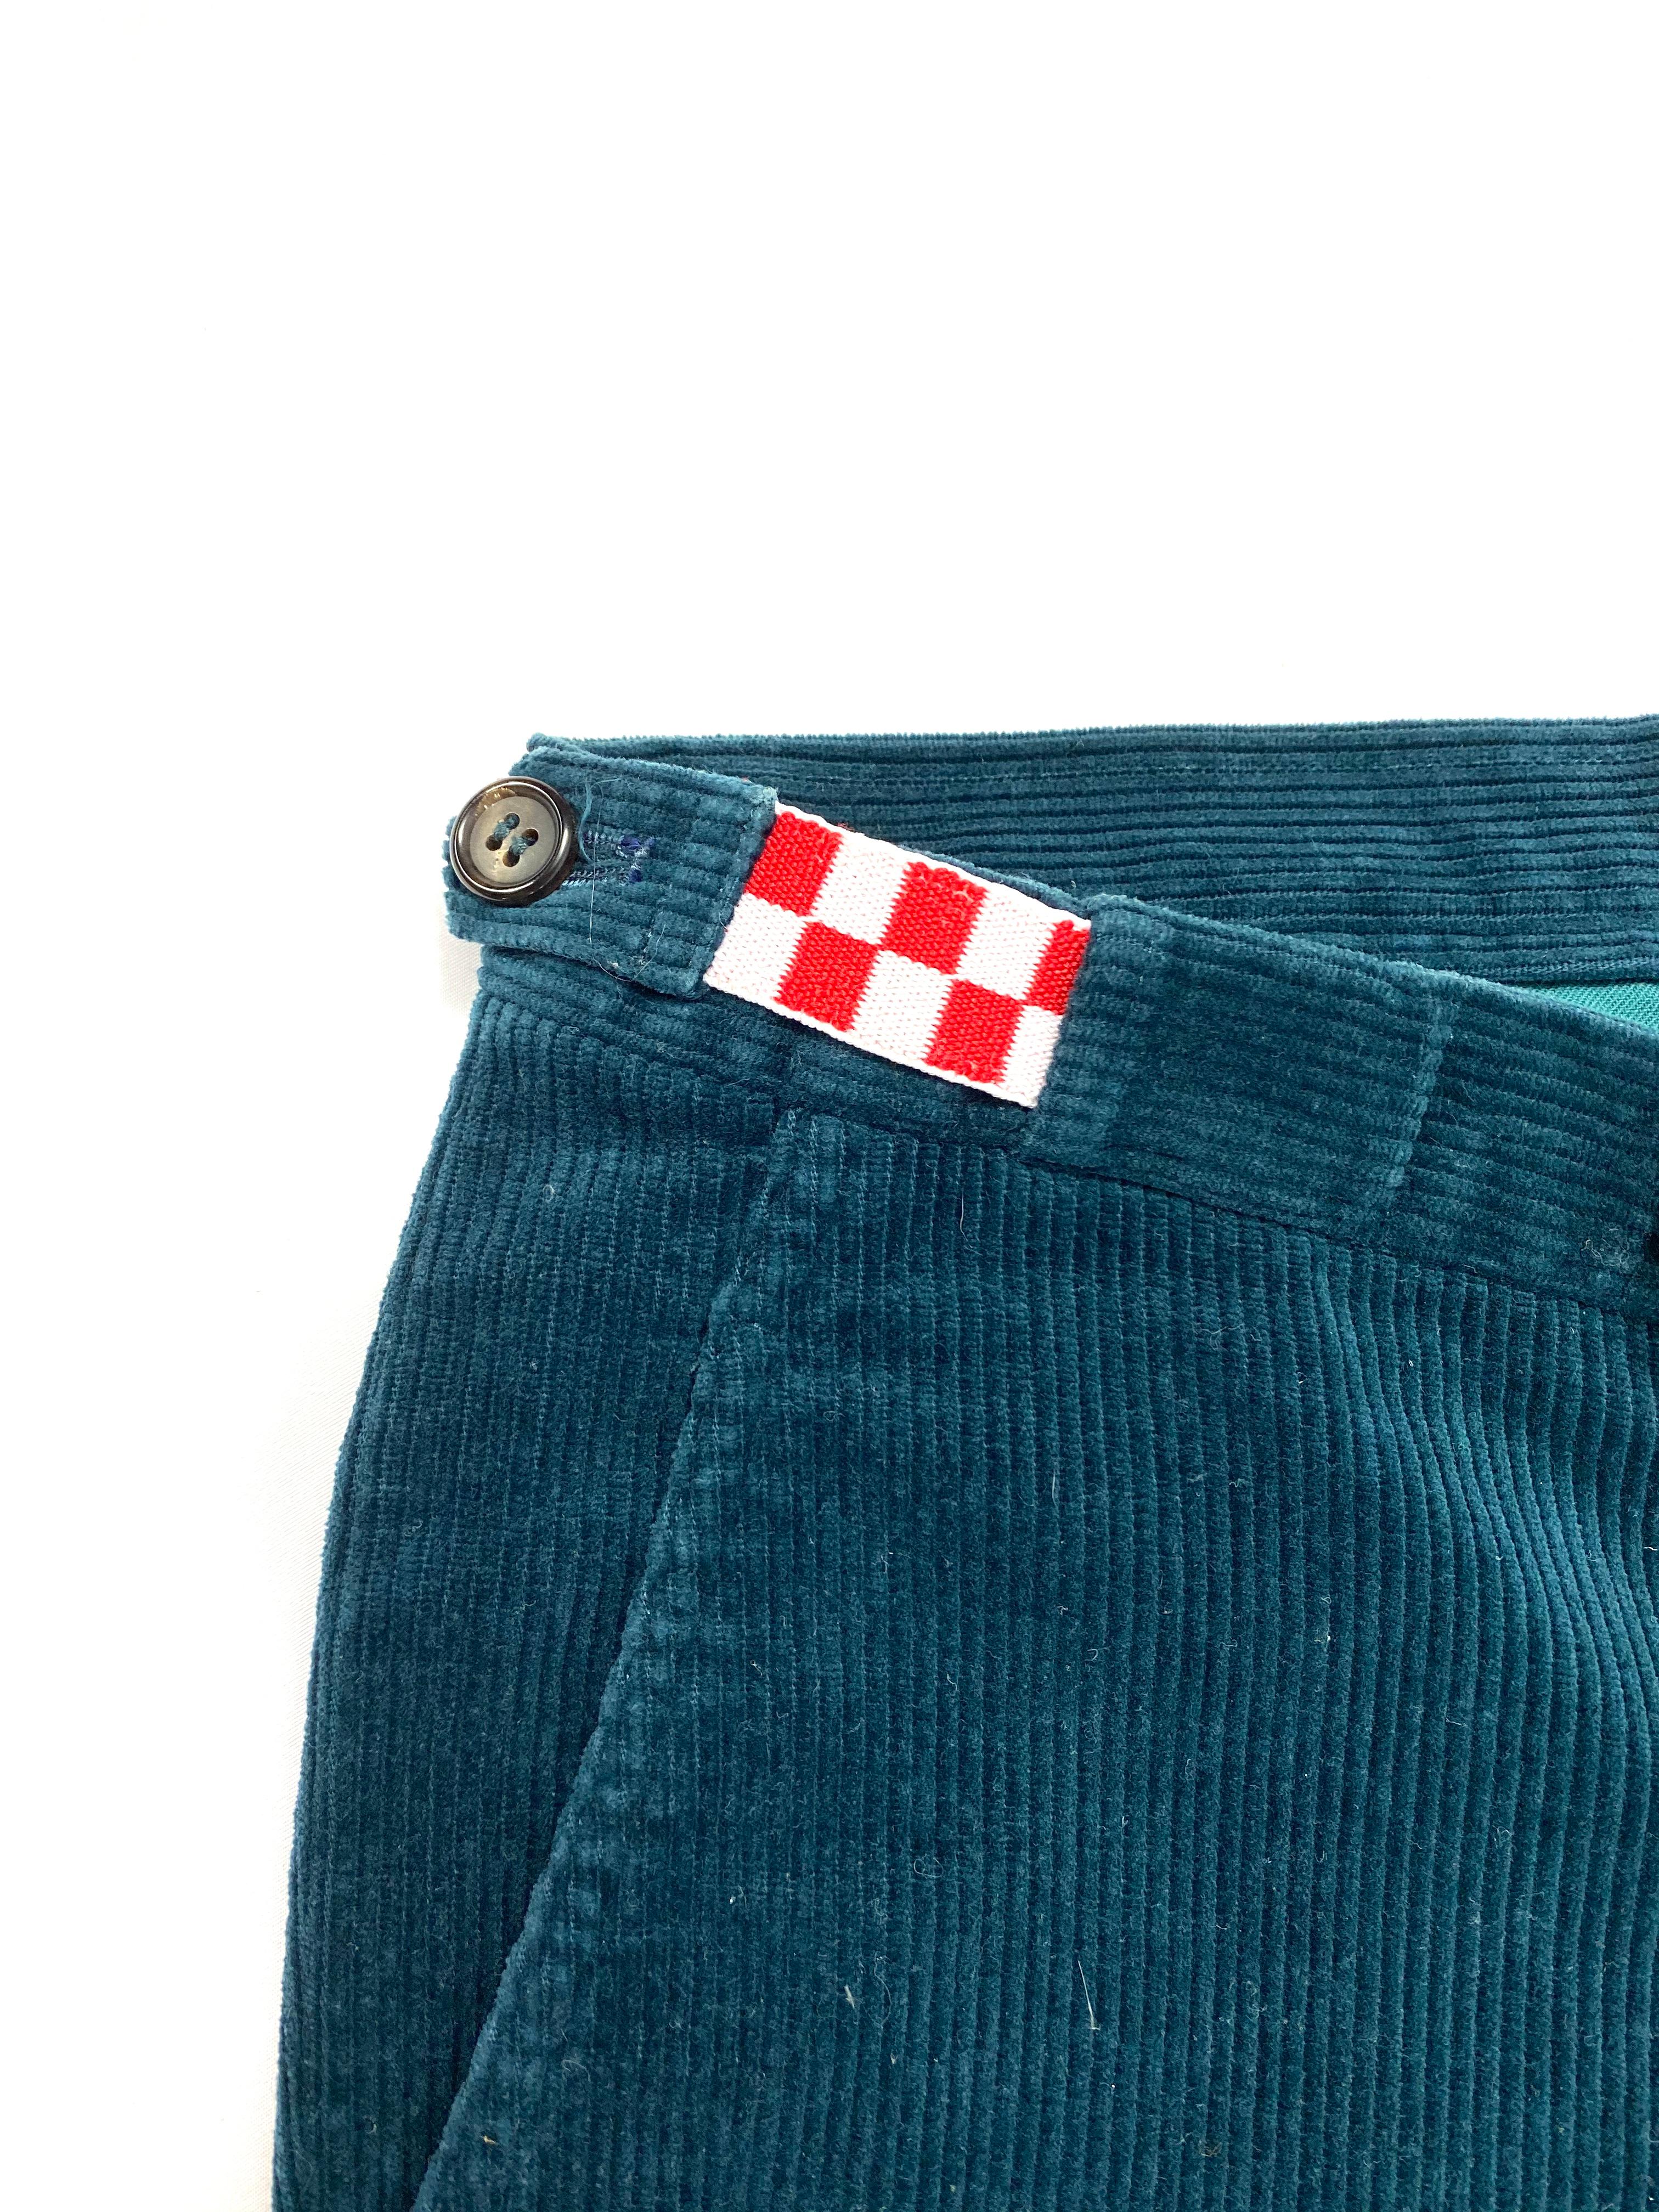 Détails du produit :
Pantalon skinny en velours côtelé de couleur turquoise foncé avec détails de fleurs brodées sur le devant et le dos, une poche de chaque côté et deux poches au dos.
Fabriqué au Japon.
Neuf, jamais porté, avec étiquettes.